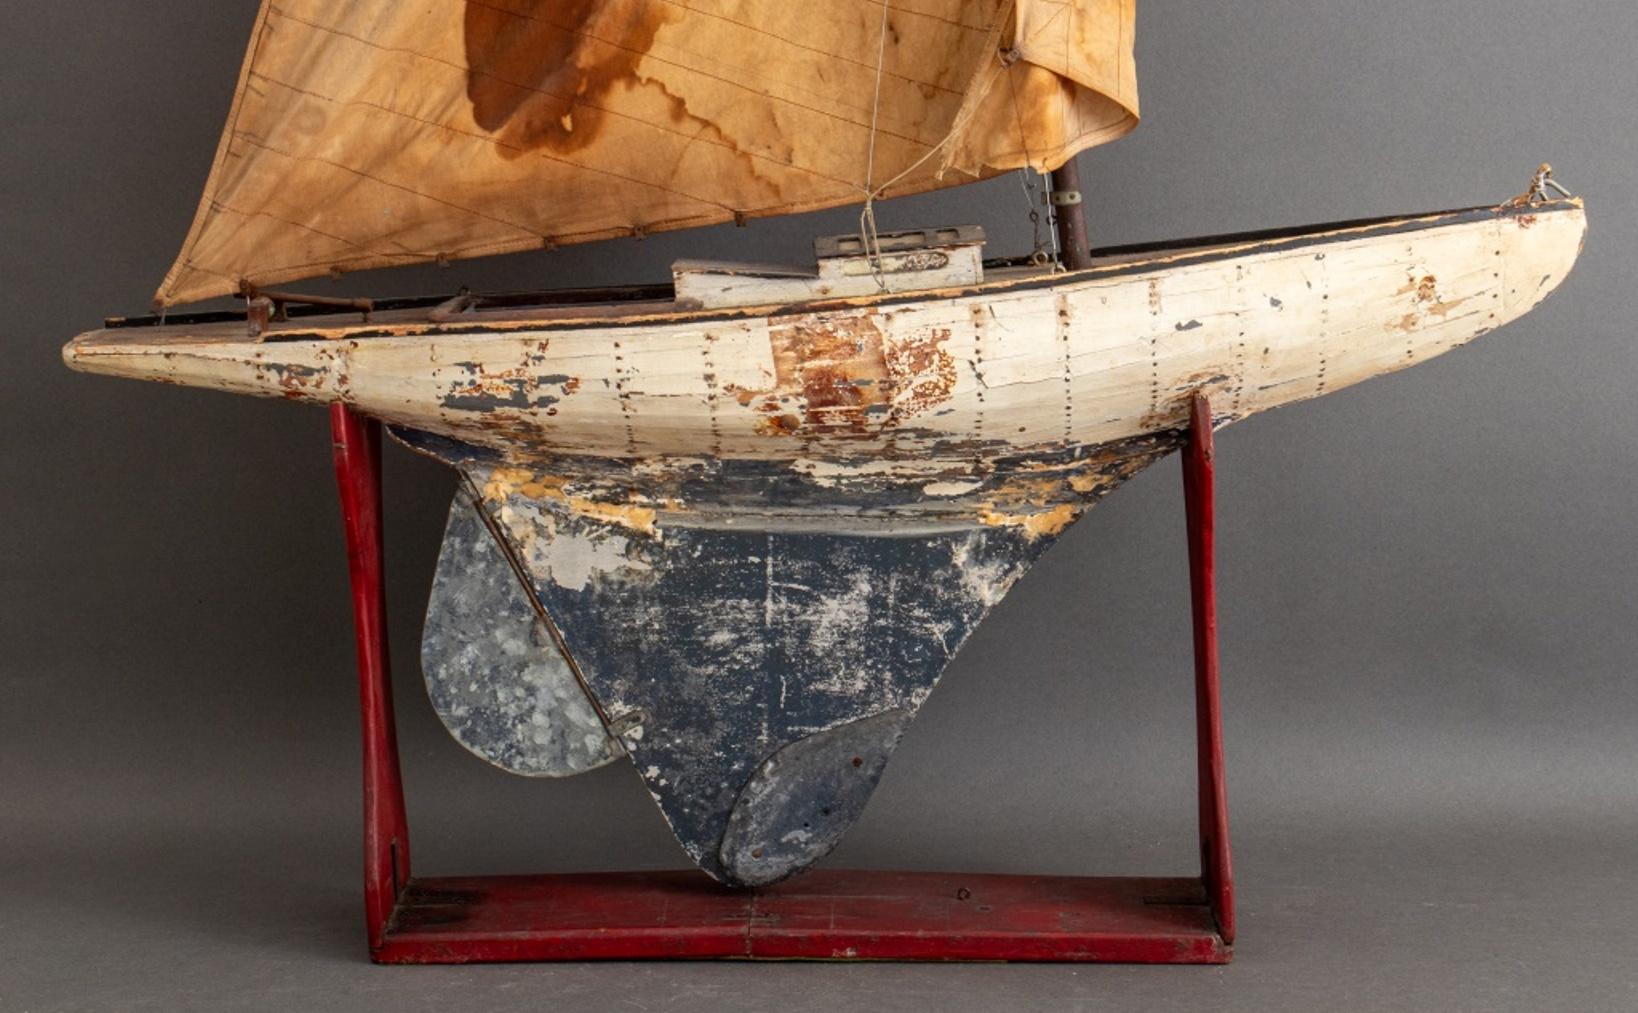 Maquette de bateau américain en bois polychrome sur socle, avec décor peint en polychromie, et voiles en lin, état d'origine.

Dimensions : 60